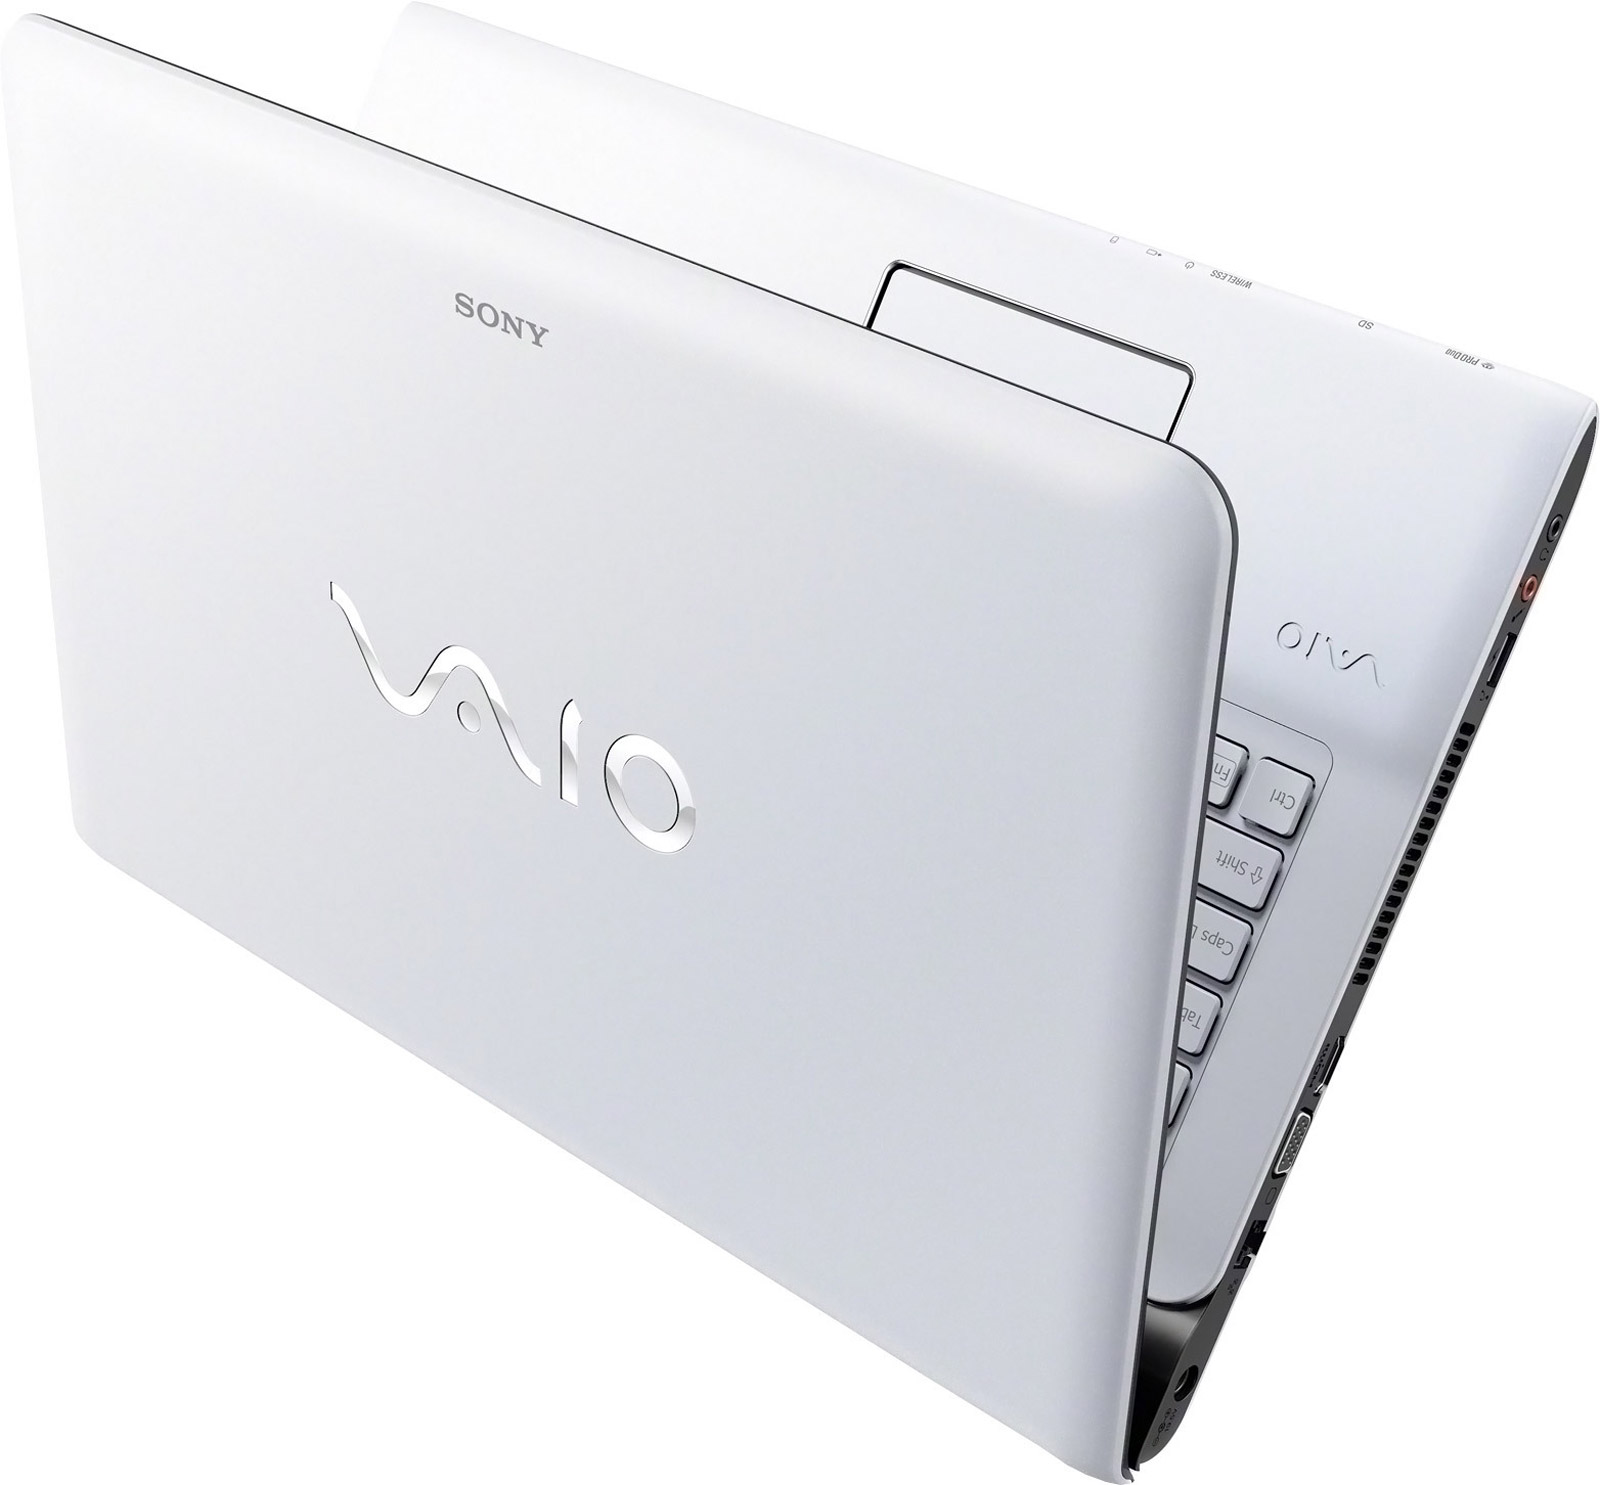 Экран ноутбук sony. Sony VAIO sve1712e1rw. Sony VAIO SV e1713s. Sony VAIO ноутбук 17 дюймов. Sony VAIO 2020m 17.3.